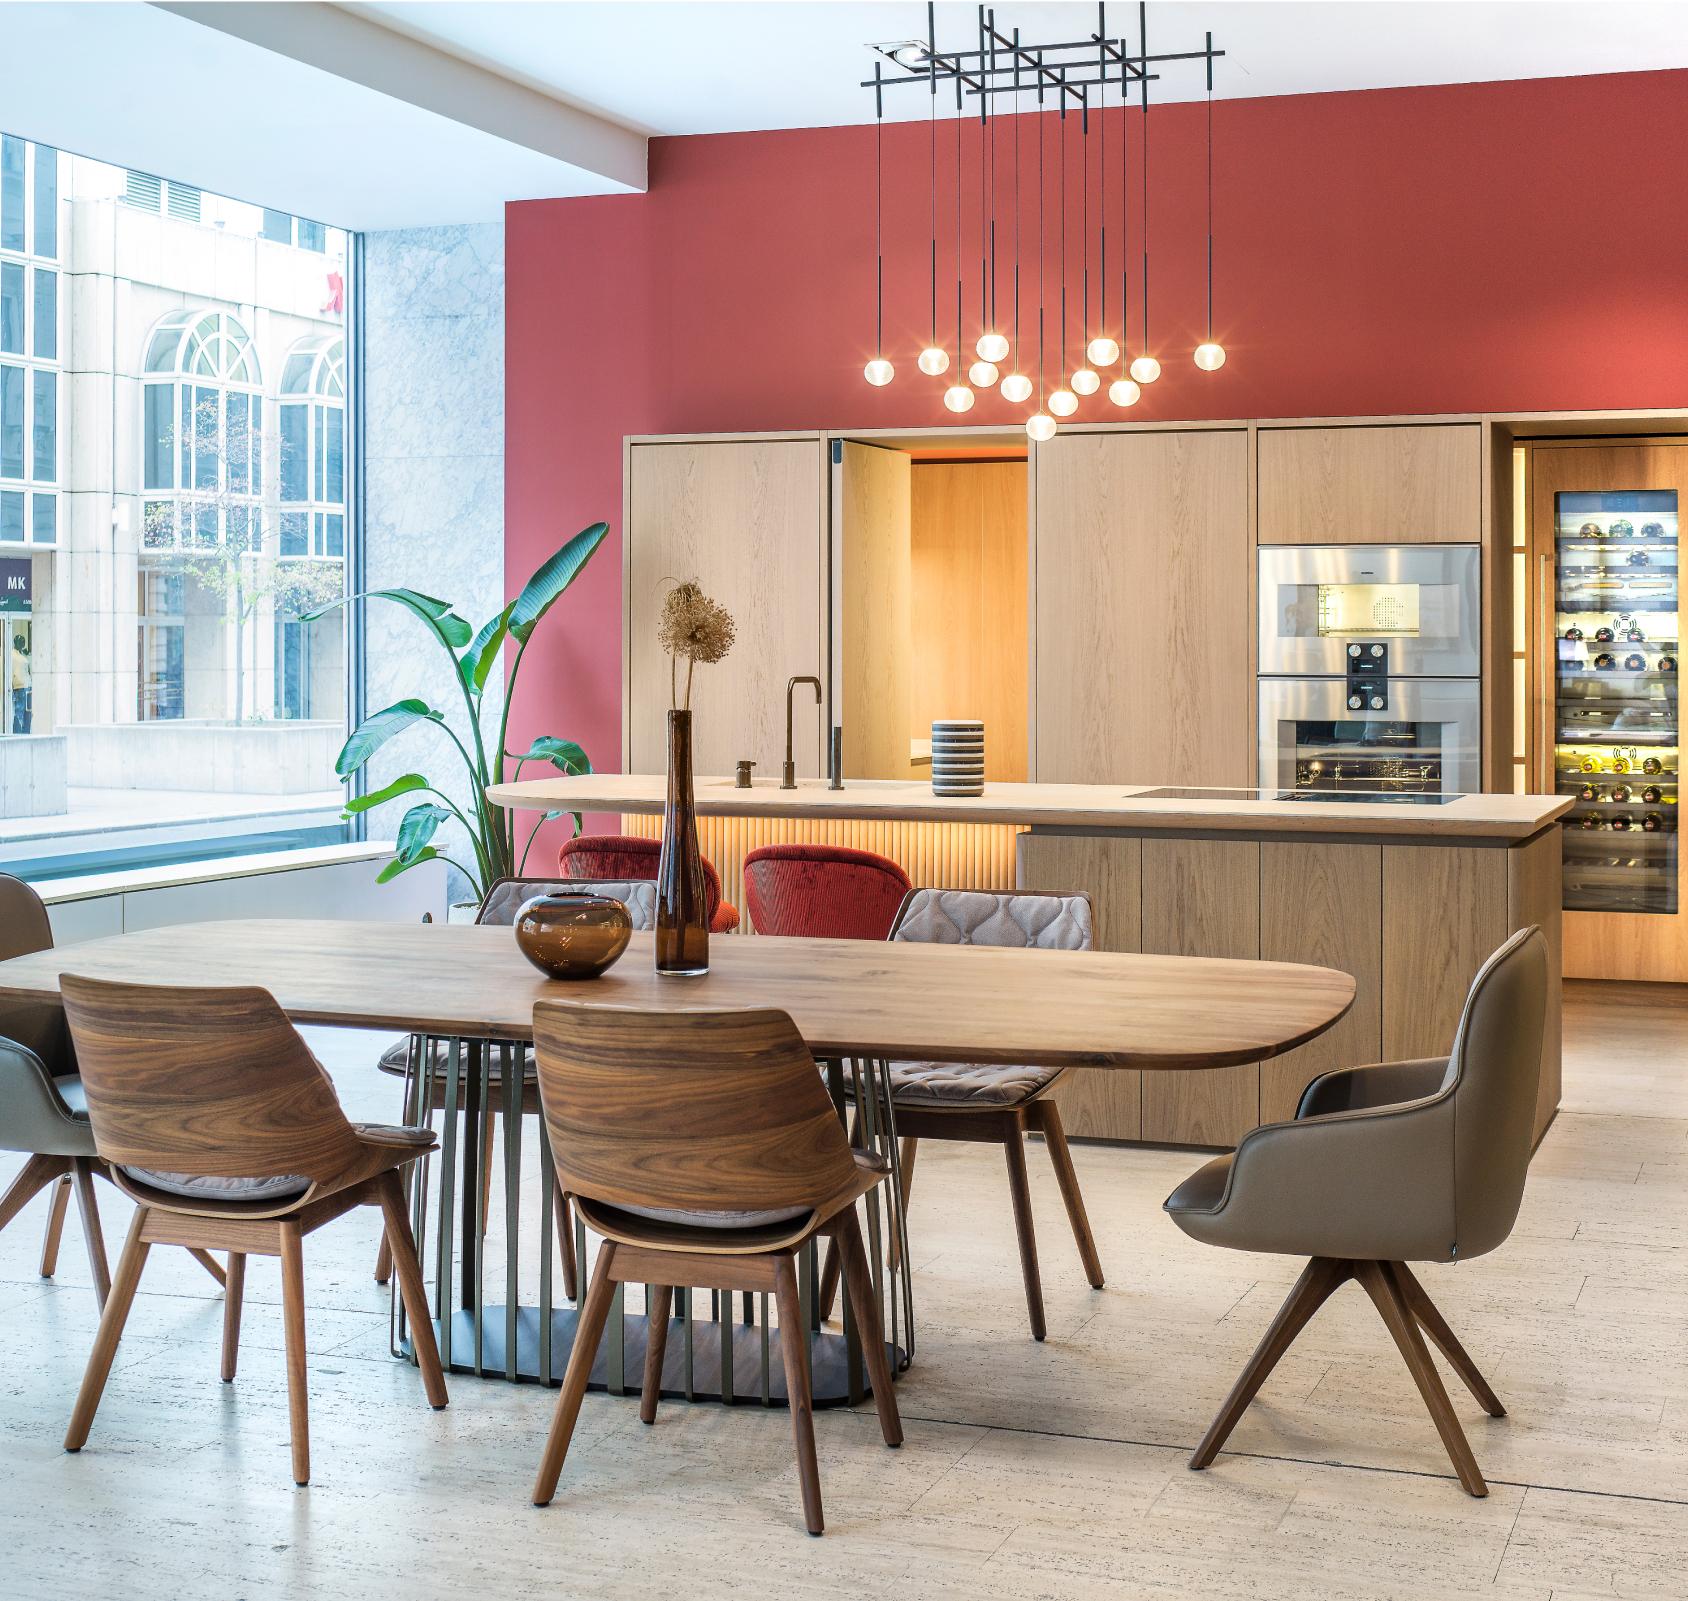 Ein moderner und stilvoller Küchen-Essbereich mit einem großen Holztisch, eleganten Stühlen und einer gut ausgestatteten Küchenzeile an einer warmen Terrakotta-Wand, ergänzt durch einen kunstvollen Kronleuchter und hohe Fenster, die den Raum mit natürlichem Licht durchfluten.